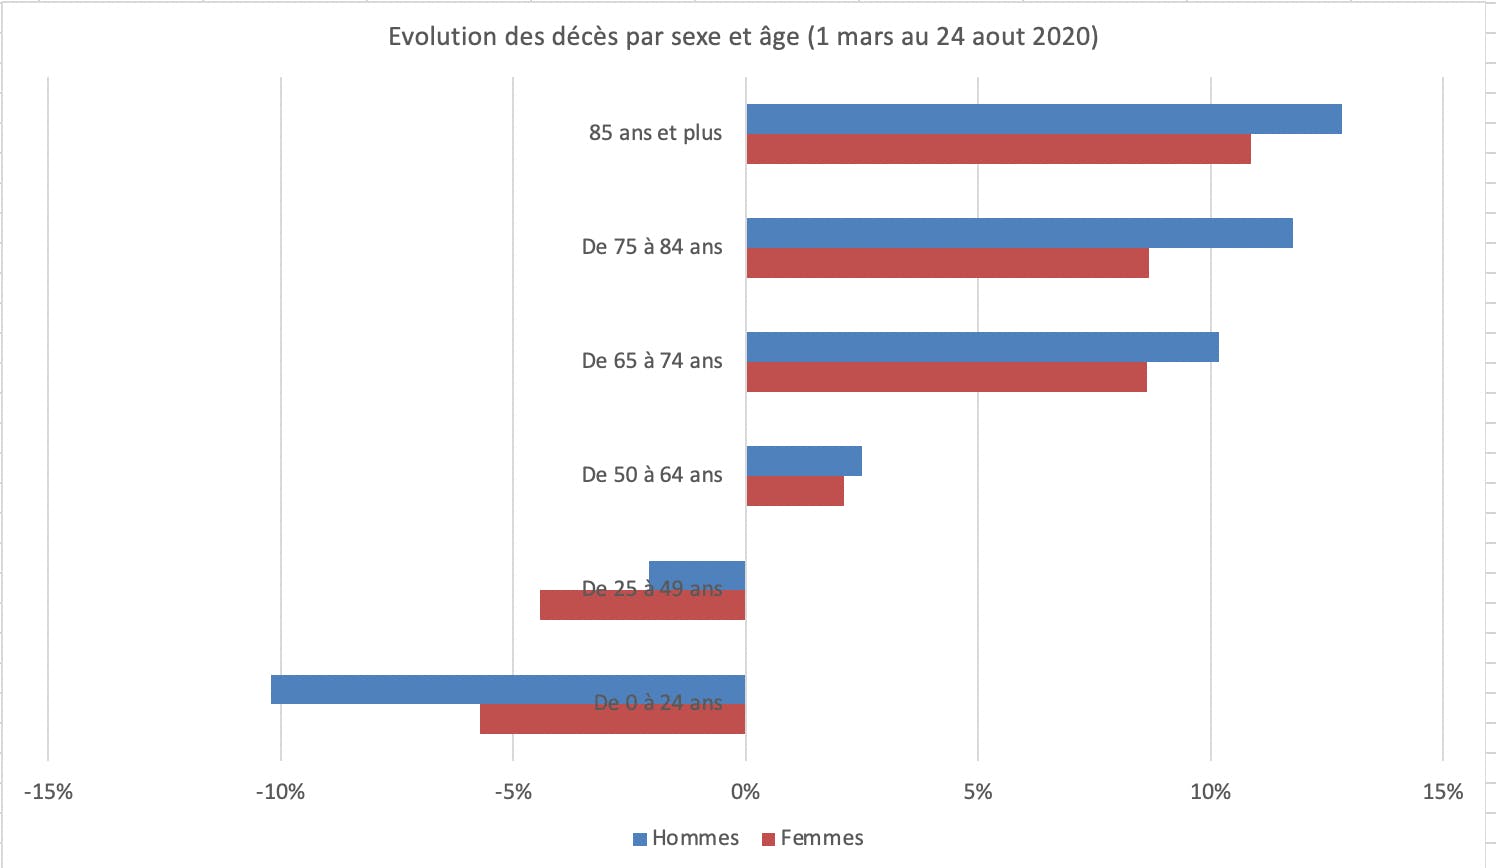 Evolution des décès par sexe et âge (1 mars au 24 aout 2020)
